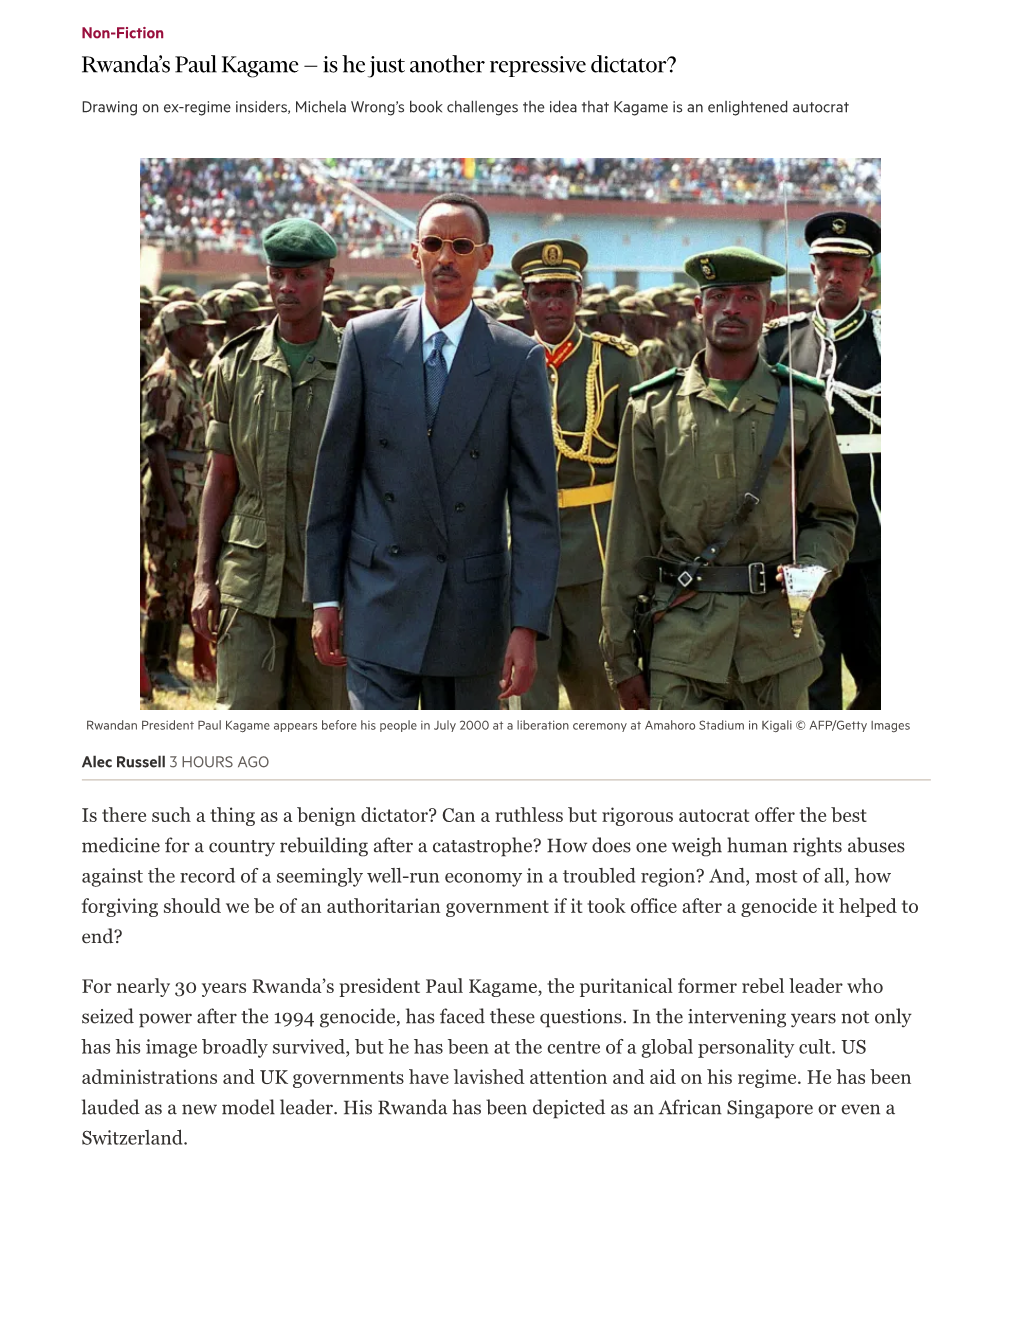 Rwanda's Paul Kagame